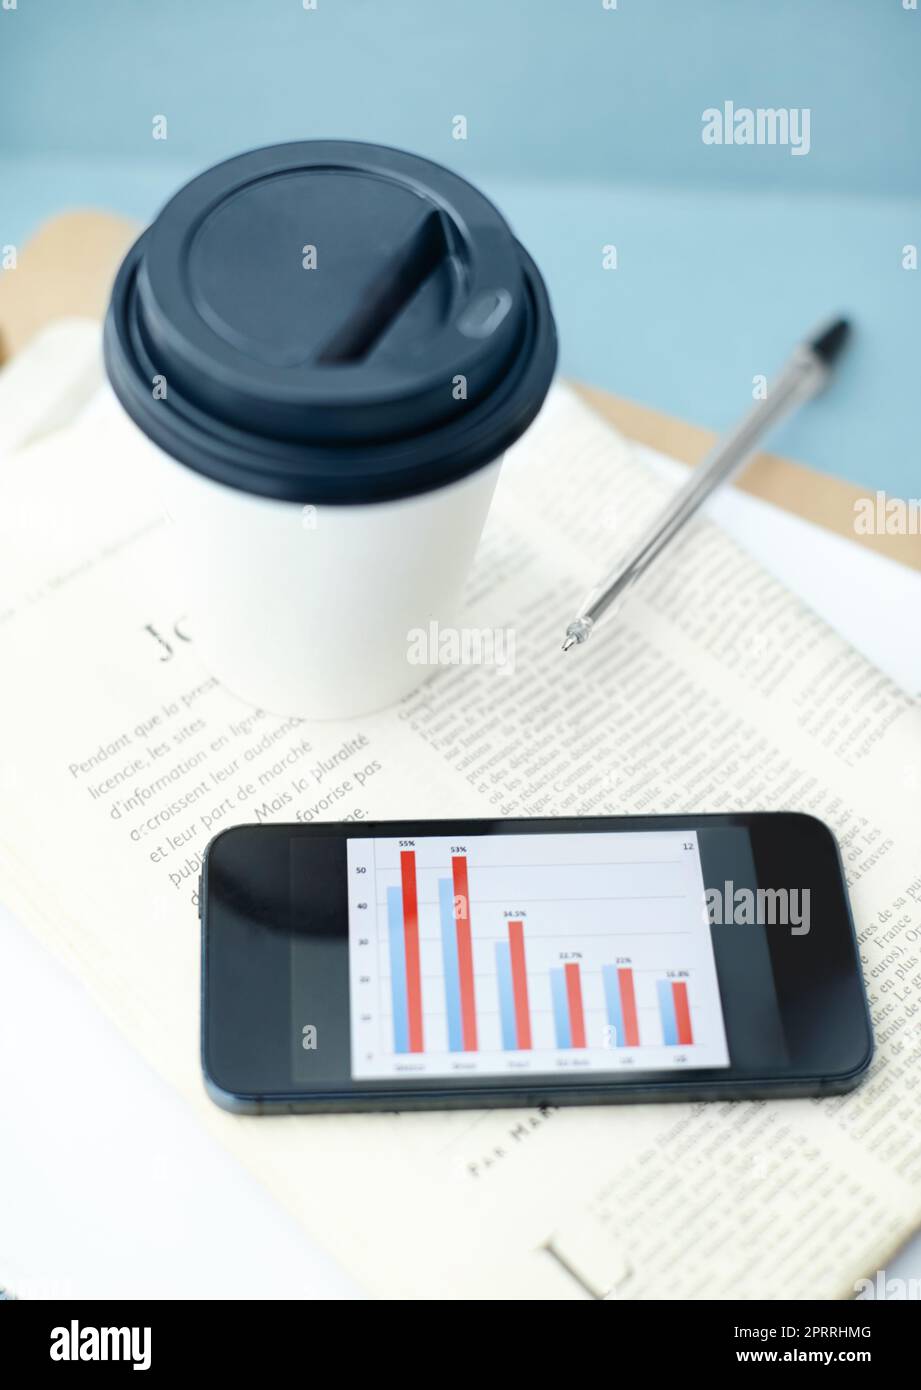 Oficina portátil. Smartphone con barra en la pantalla sentado en la parte superior de un periódico y portapapeles con una taza y un bolígrafo desechables. Foto de stock